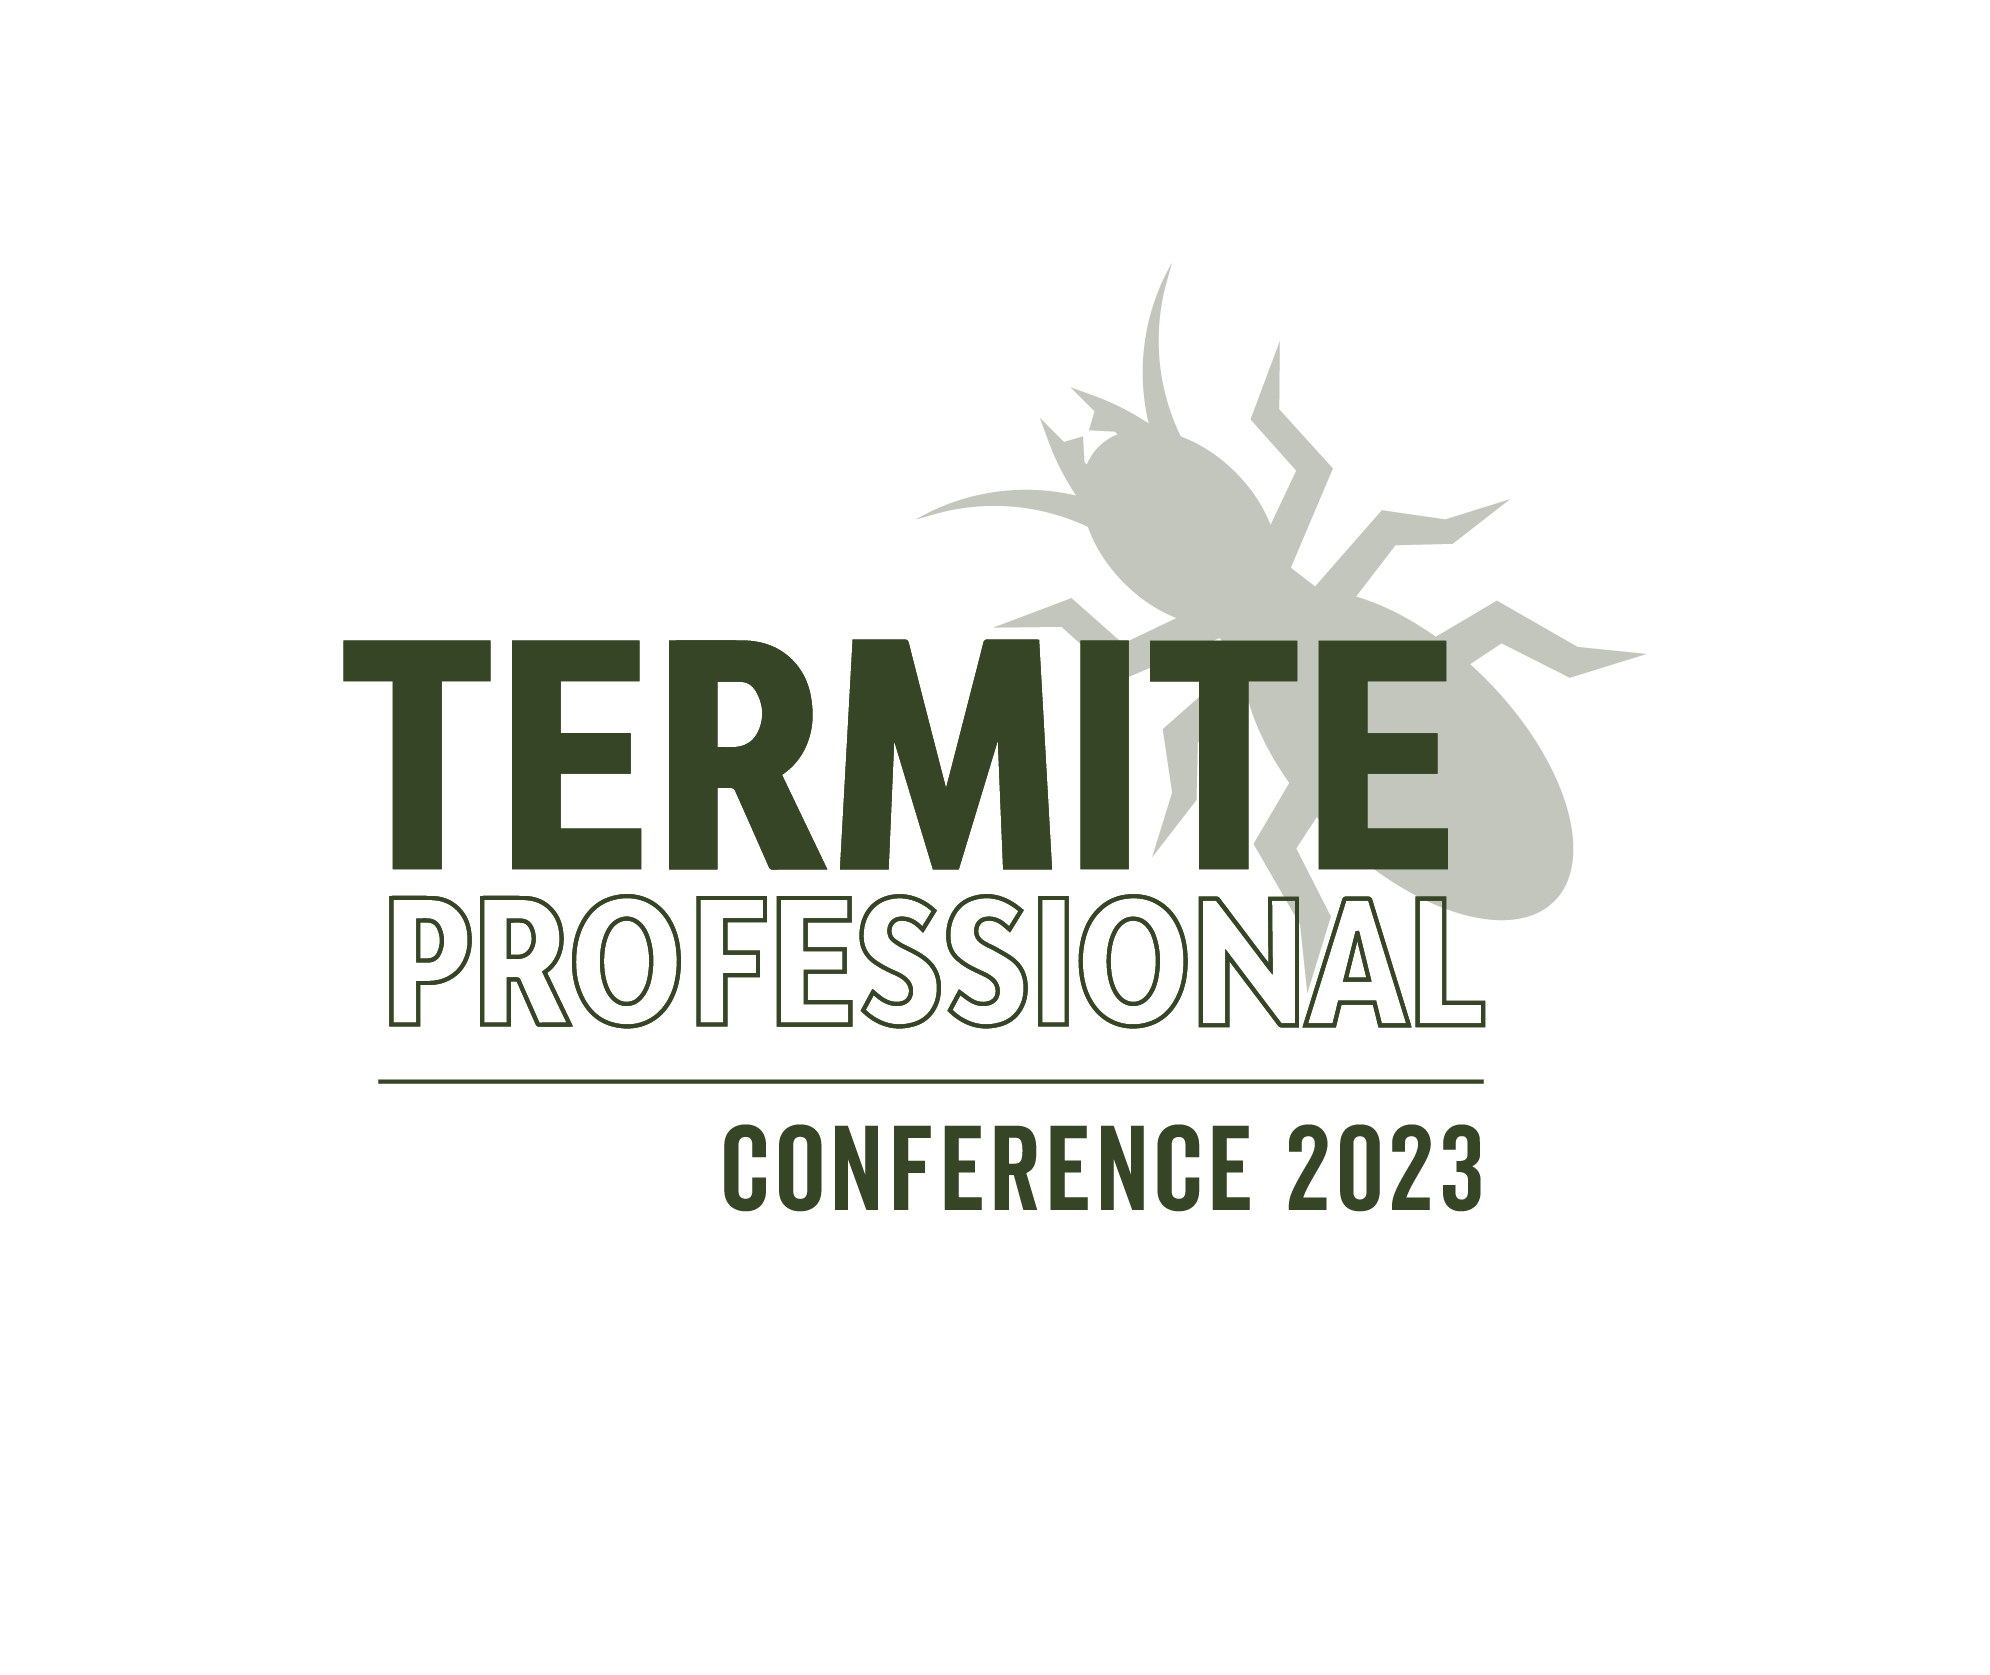 Termite Conference 2023 logo